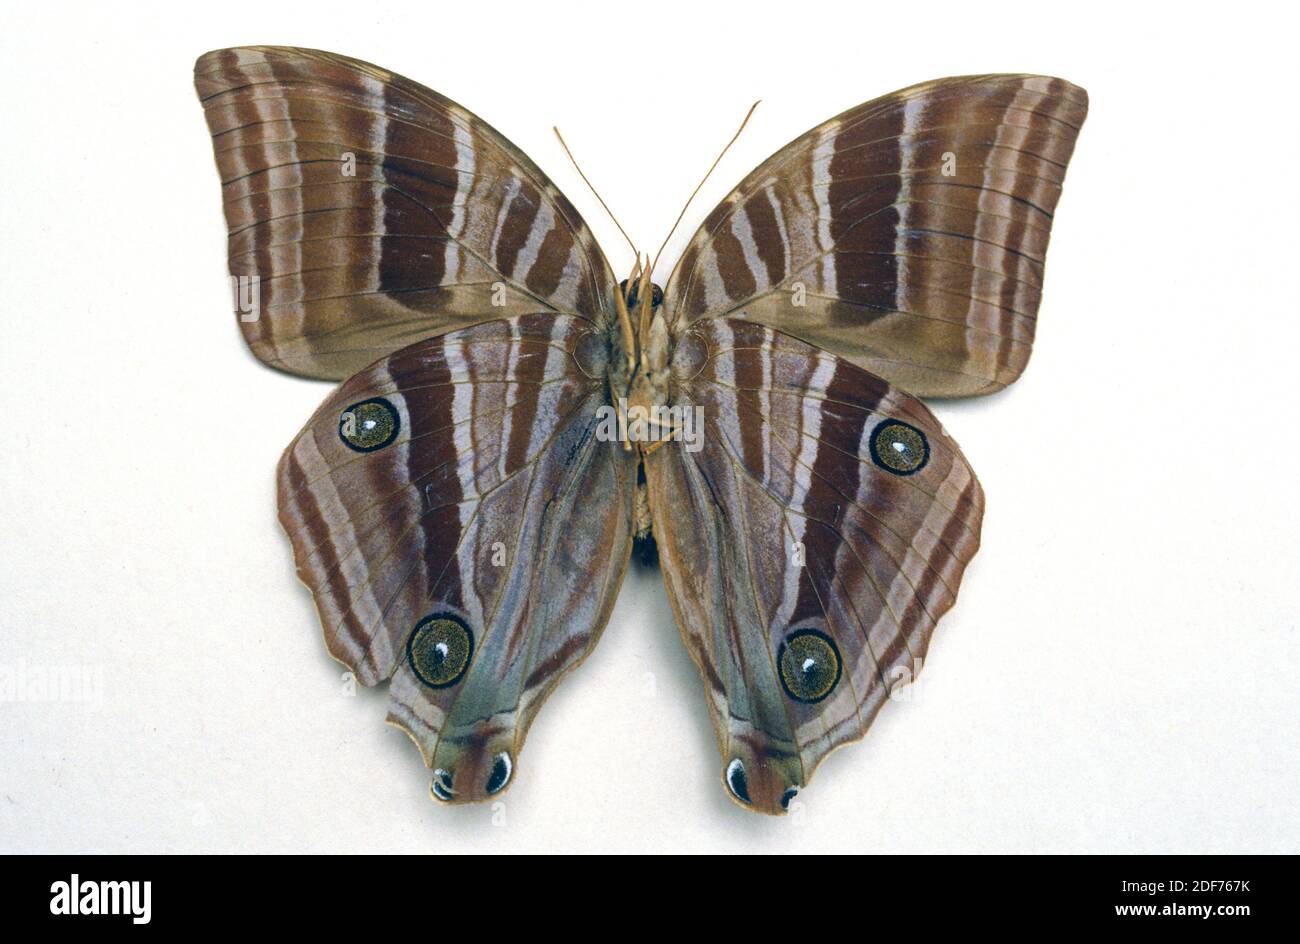 Amathusia perakana es una mariposa nativa de Indonesia y Malasia. Superficie ventral. Foto de stock